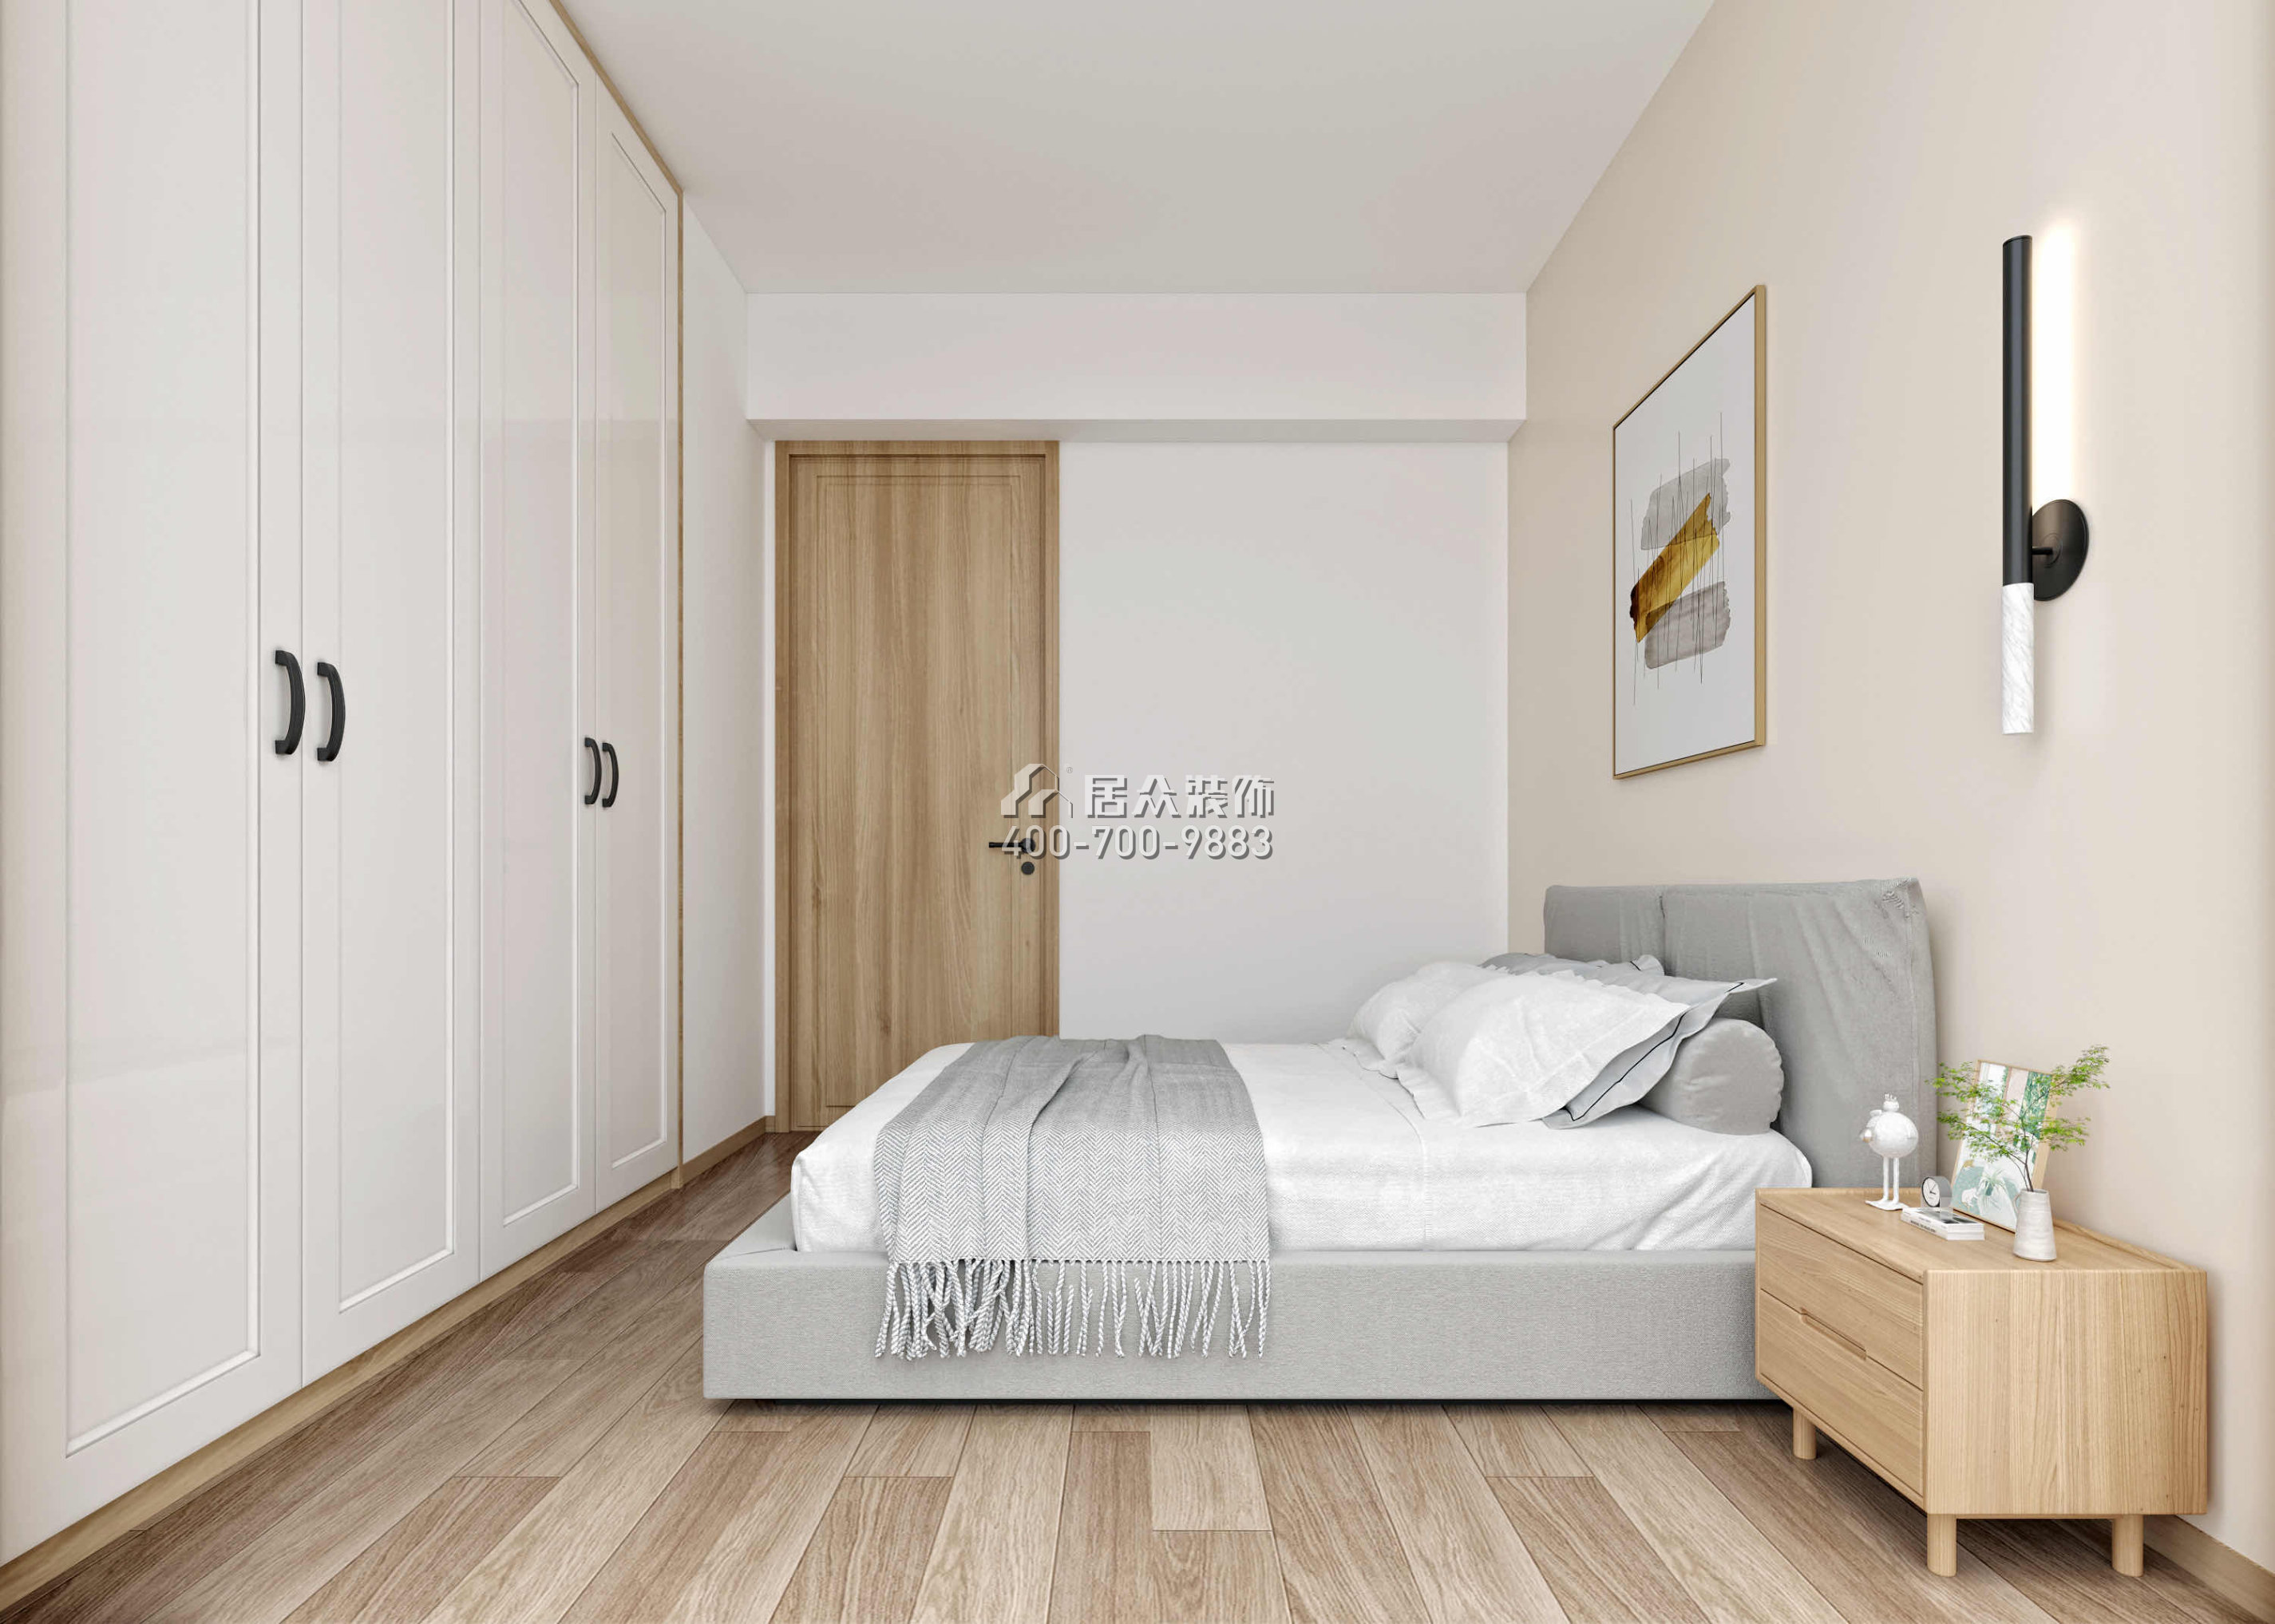 躍華園89平方米現代簡約風格平層戶型臥室裝修效果圖